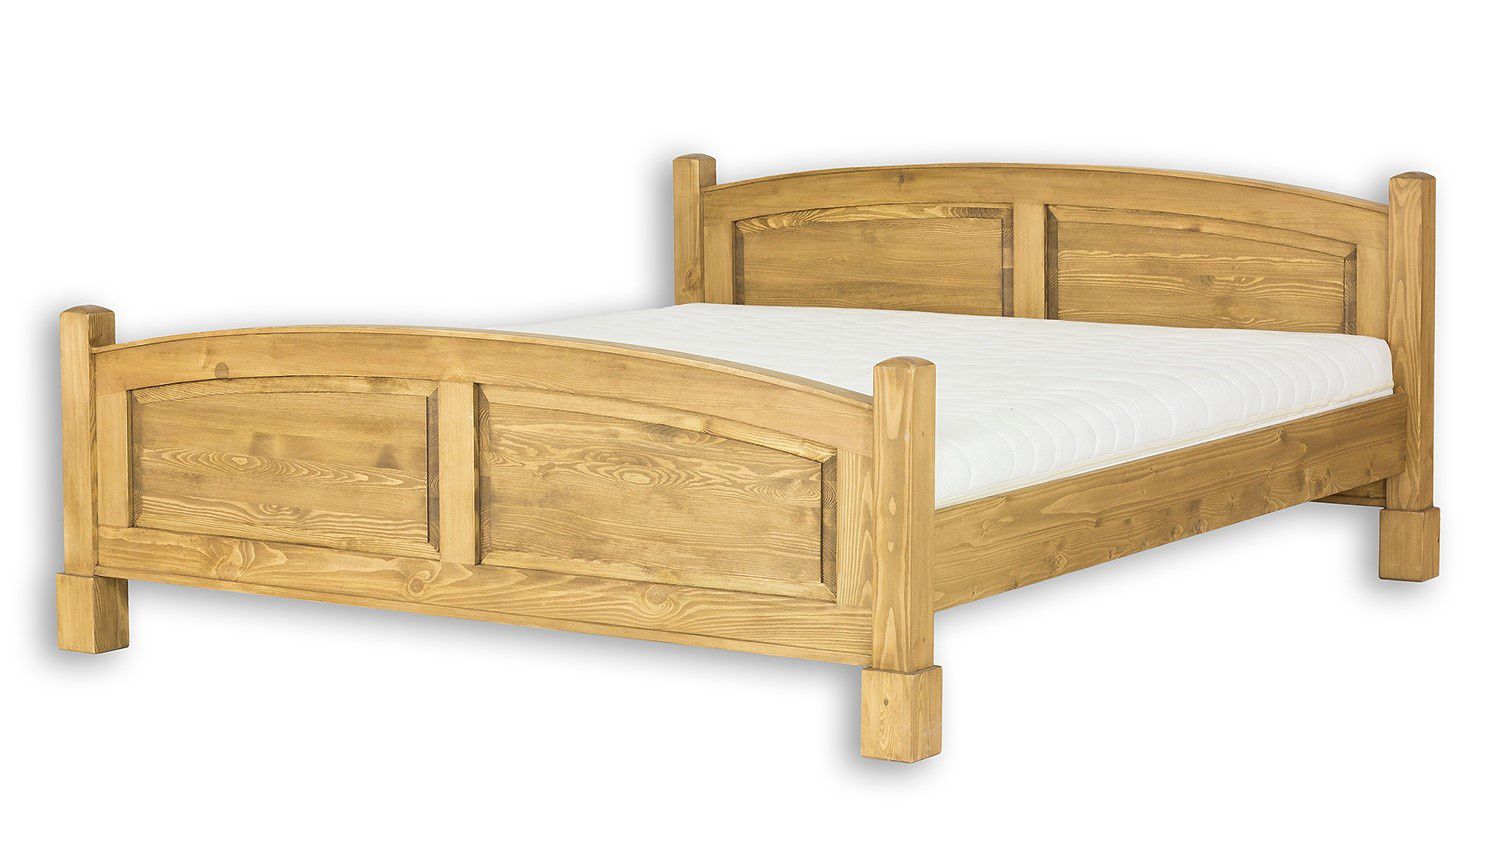 Manželská postel 160x200 dřevěná selská ACC 05 - K08 černý vosk - Nábytek Harmonia s.r.o.